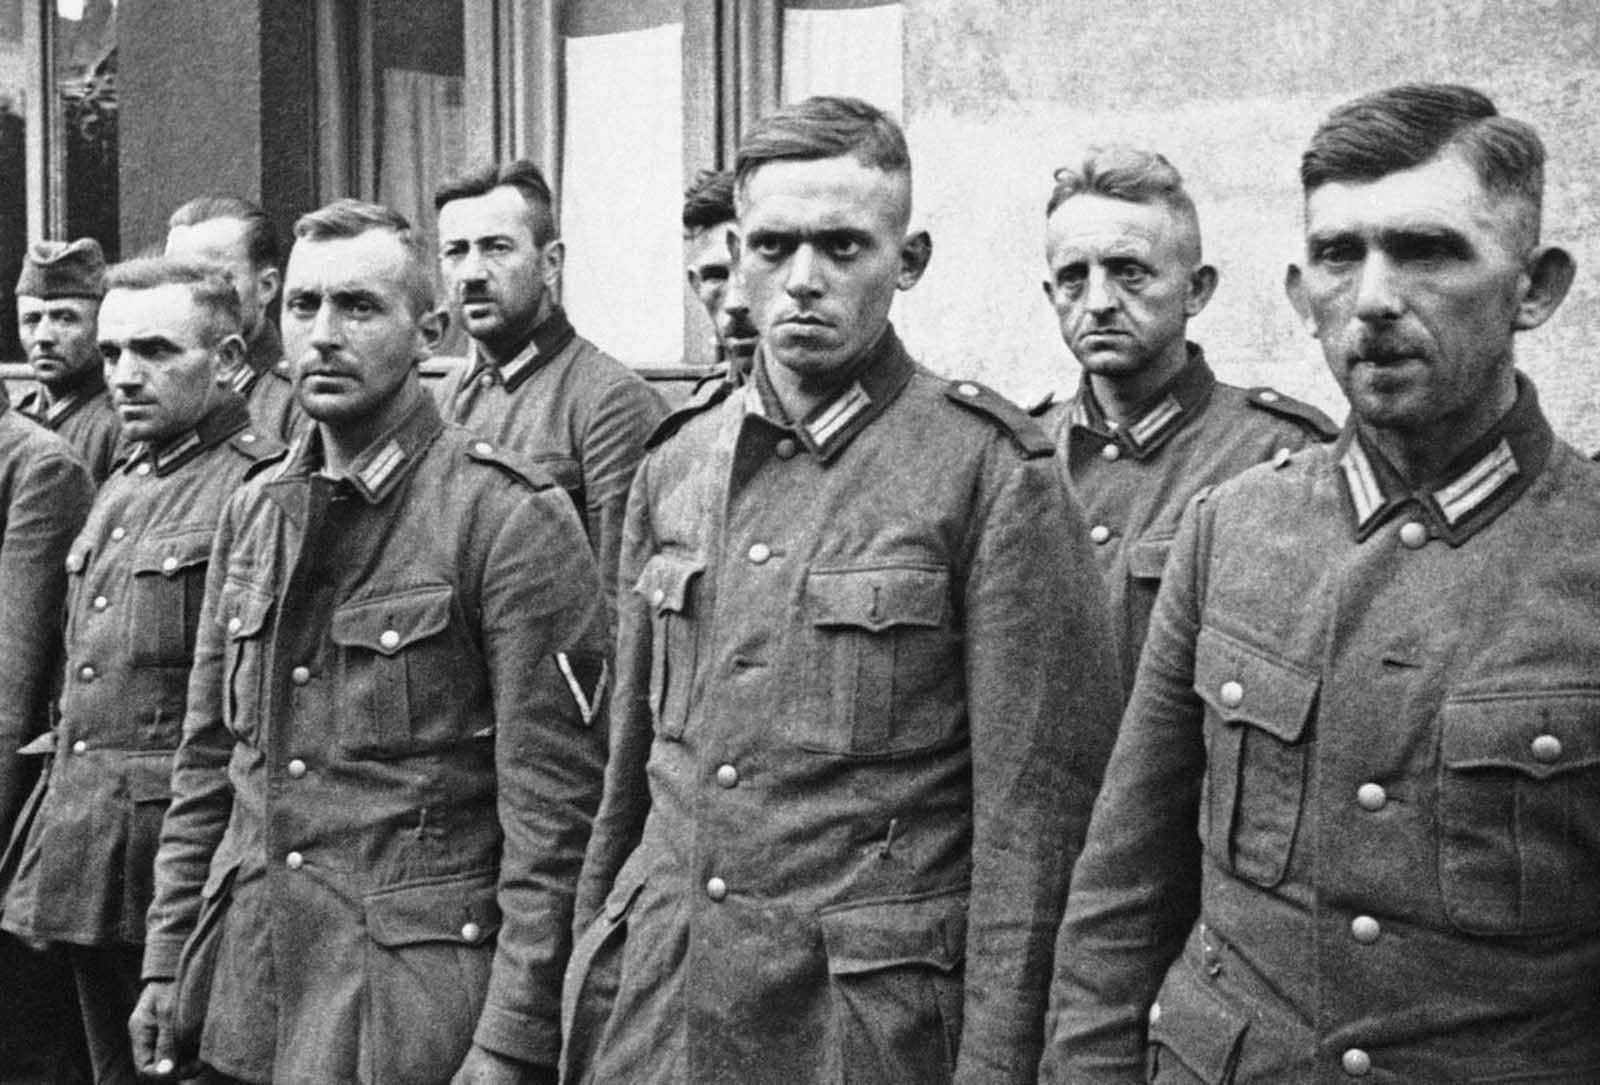 Польша сентябрь 1939 года. Немецкие пленные Польша 1939. Немецкие солдаты в Польше 1939 военнопленные. Немецкие солдаты второй мировой войны. Польский солдат 1939 года.